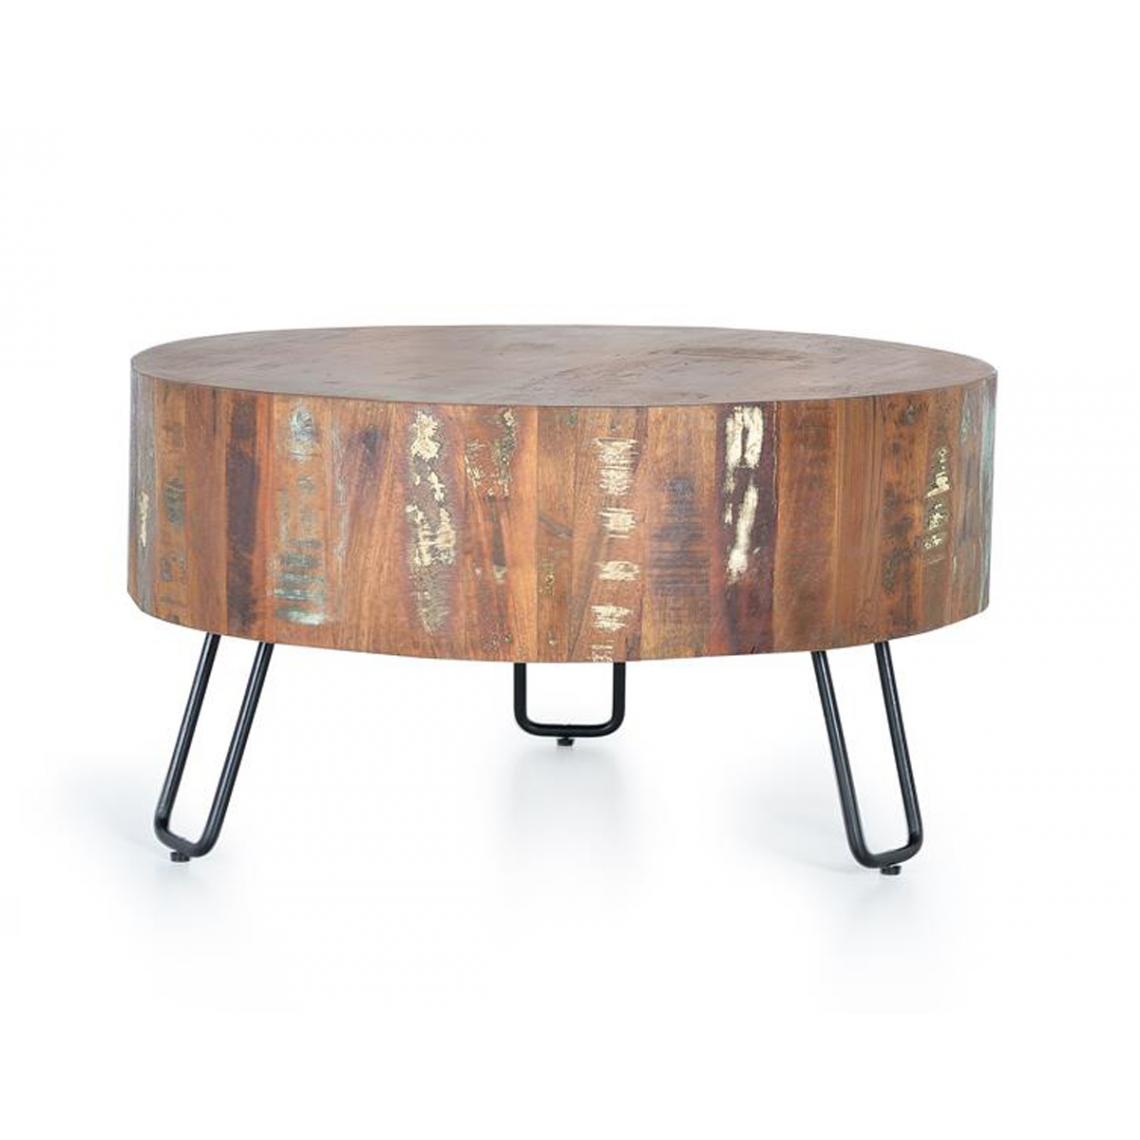 Pegane - Table basse en bois recyclé et métal multicolore - diamètre 70 x hauteur 38 cm - Tables basses